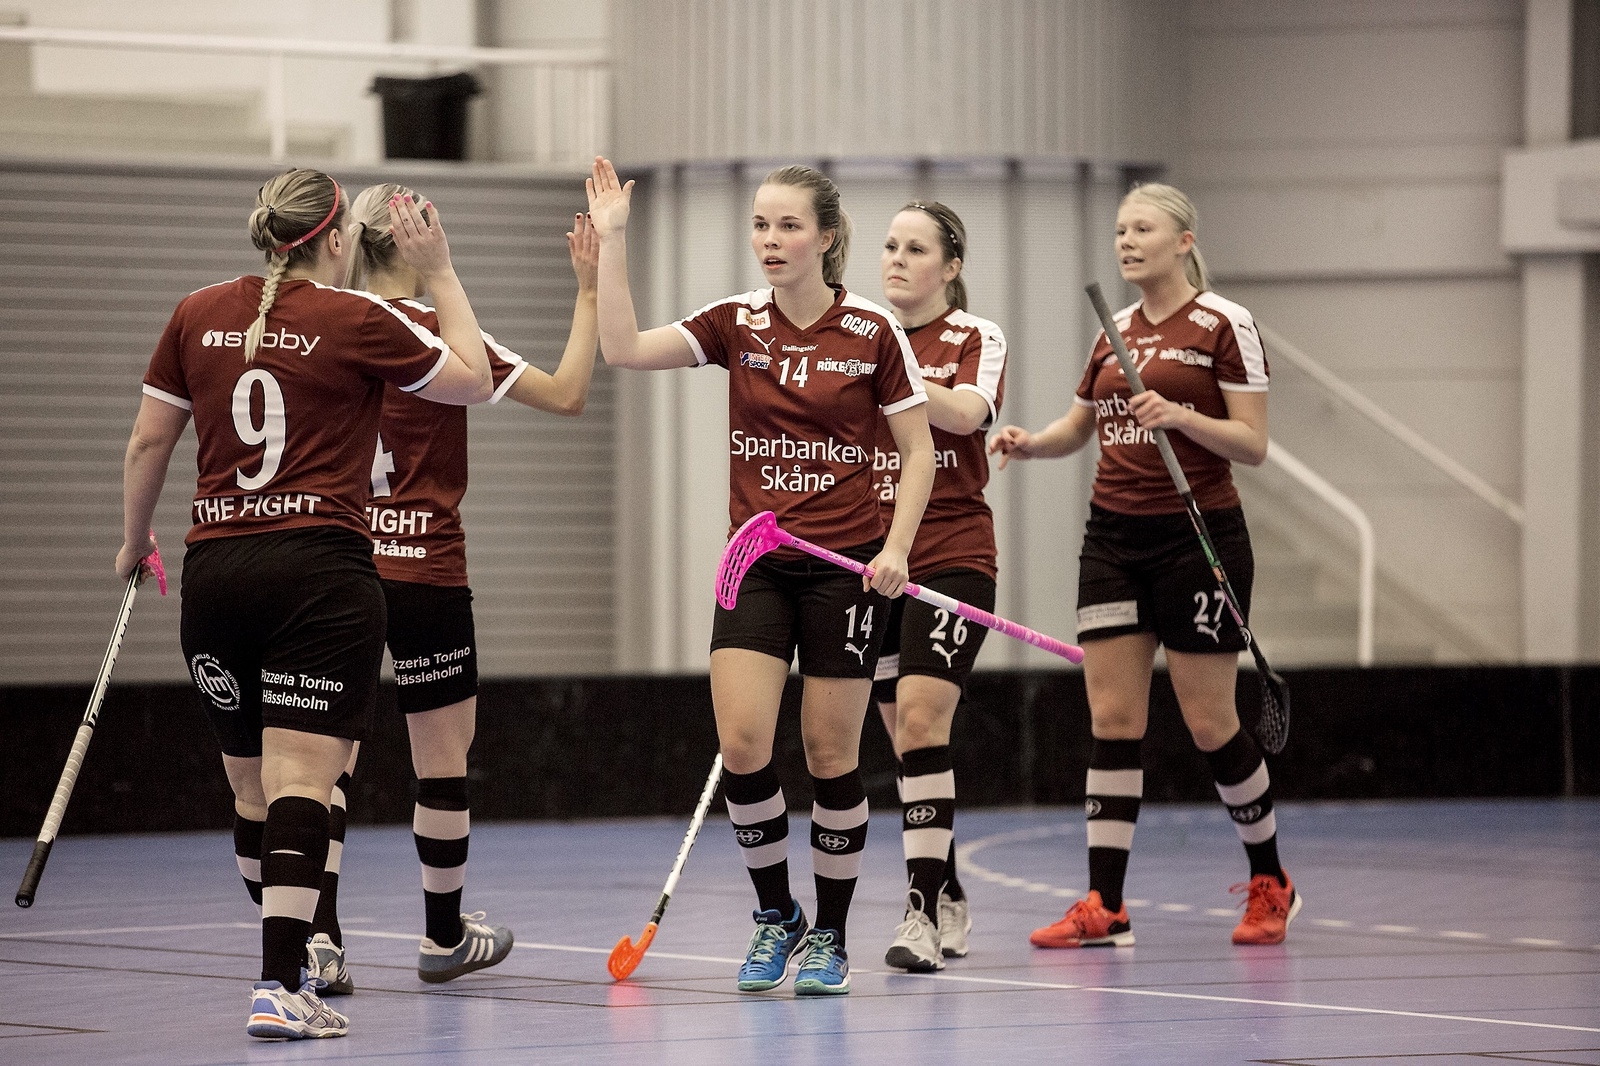 Matilda Persson (14) Röke målfirar tillsammans med lagkamraterna i Röke.  Foto: Jörgen Johansson